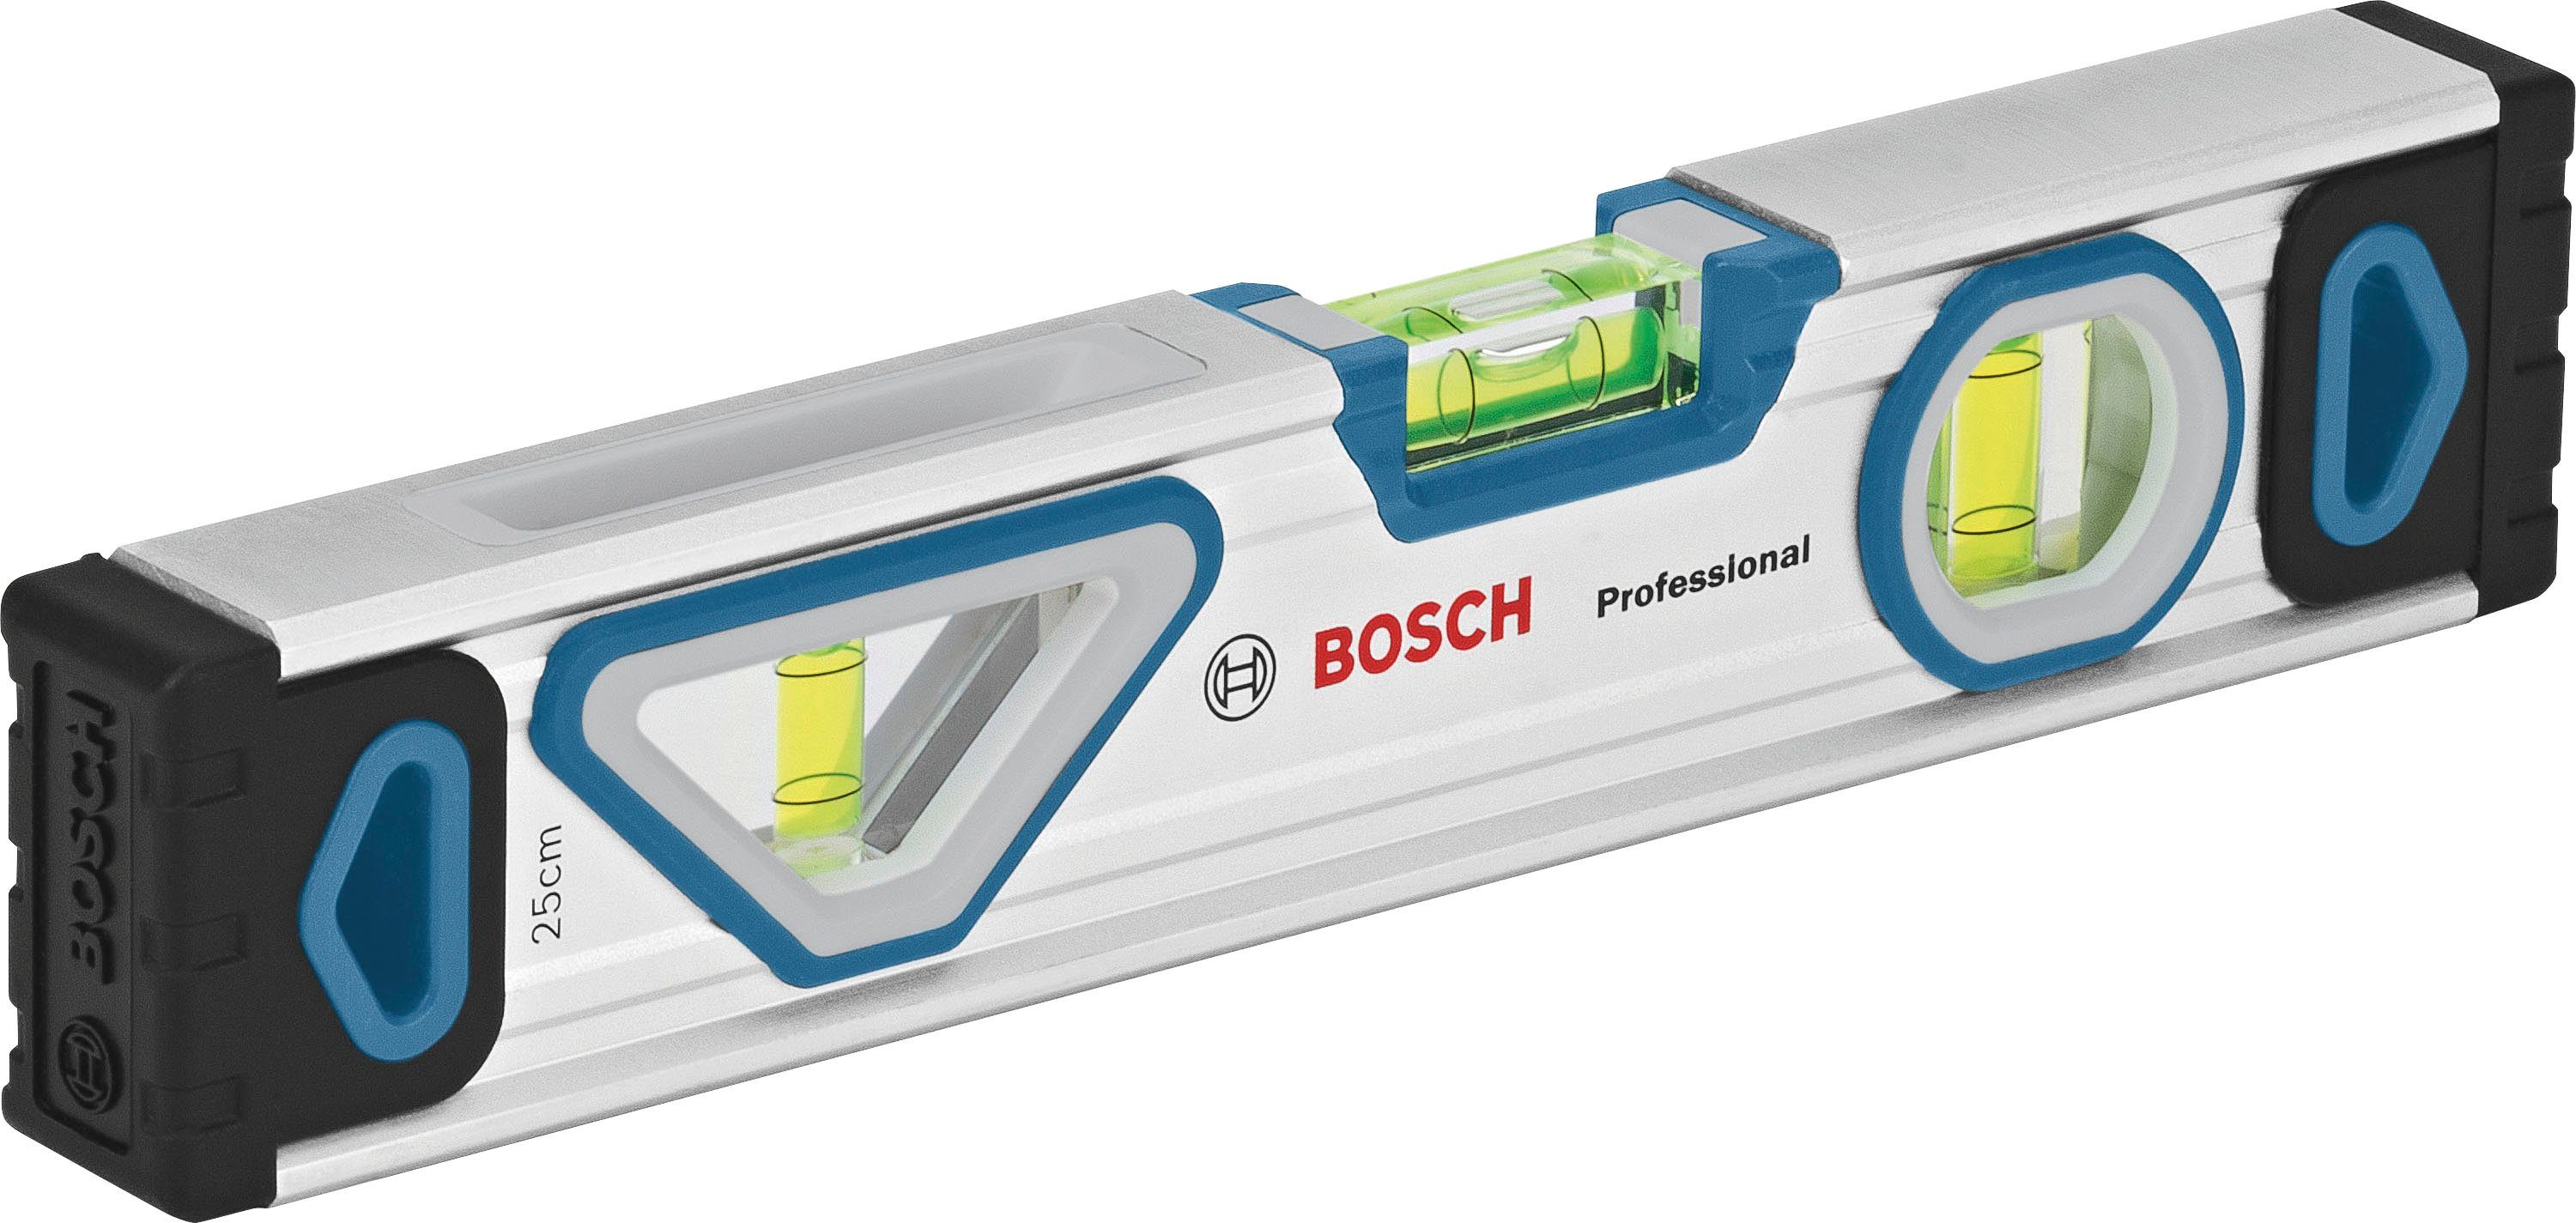 Bosch Professional Werkzeugset (1600A027M3), 13-tlg., Universalmesser Wasserwaage, Maßband, Ersatzklingen und